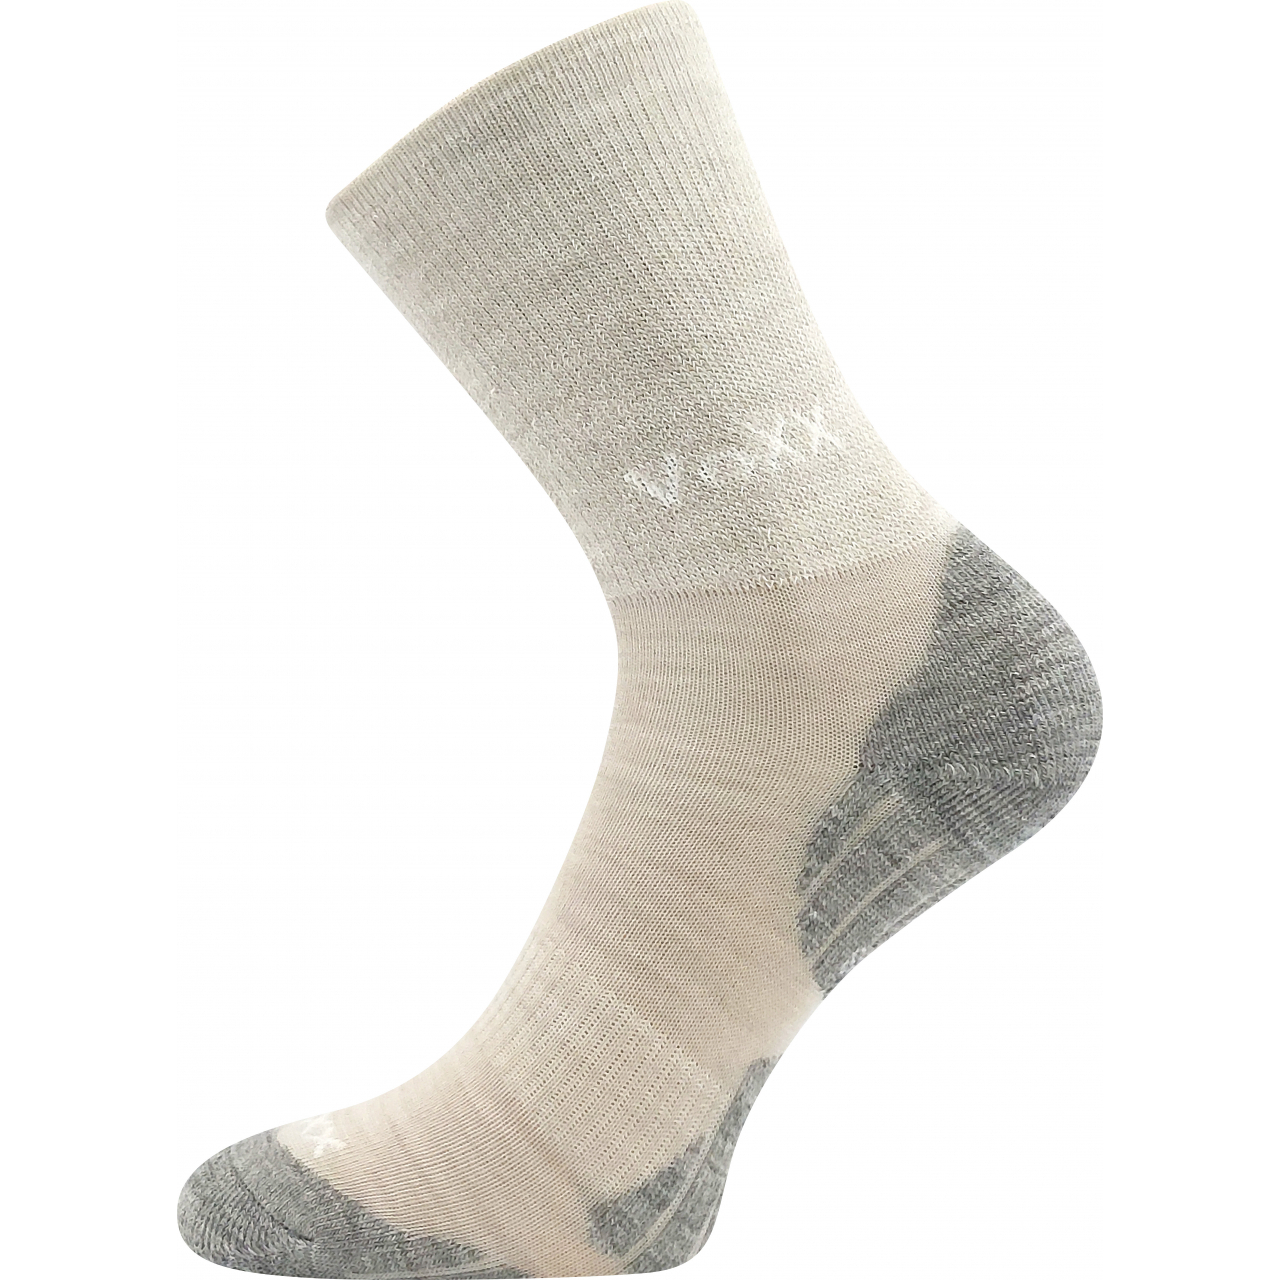 Ponožky zimní dětské Voxx Irizarik - béžové, 25-29